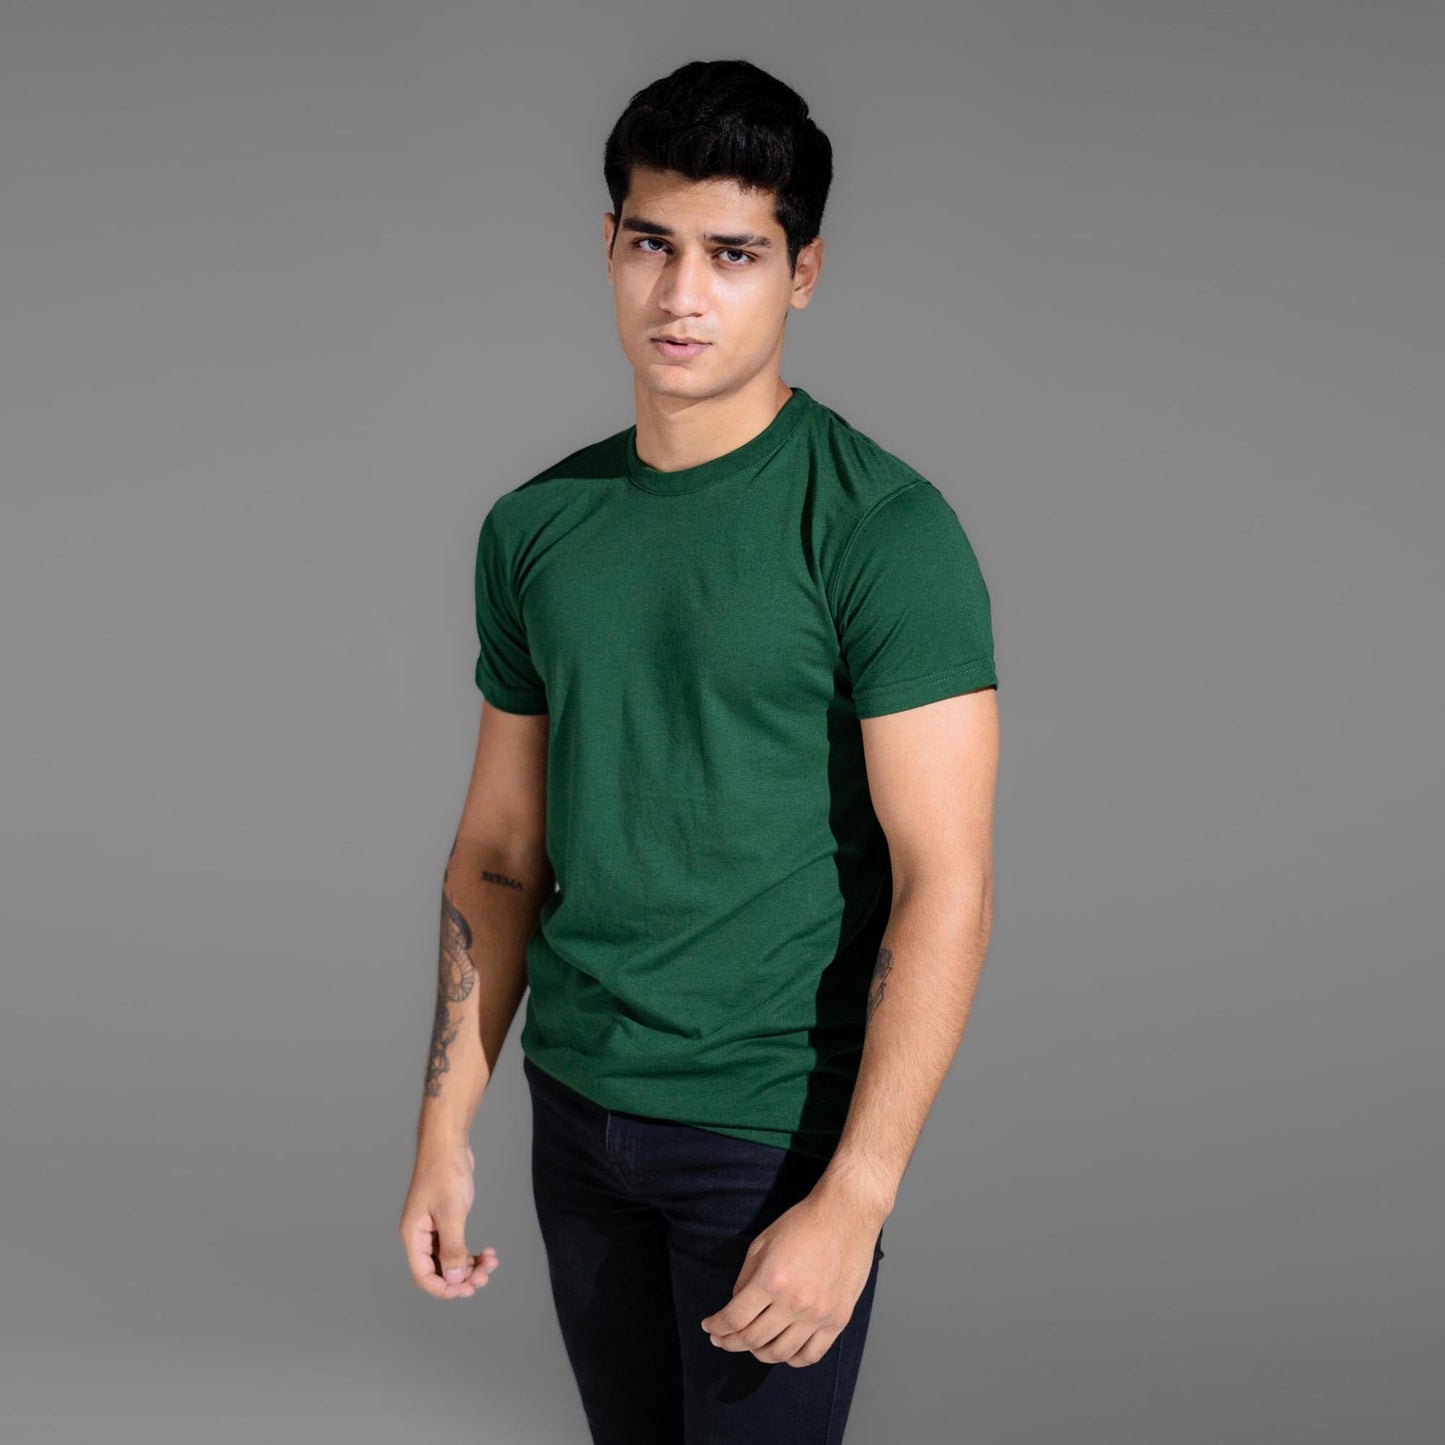 Polo Republica Men's Essentials Combed Cotton Short Sleeve Tee Shirt Men's Tee Shirt Polo Republica Bottle Green S 